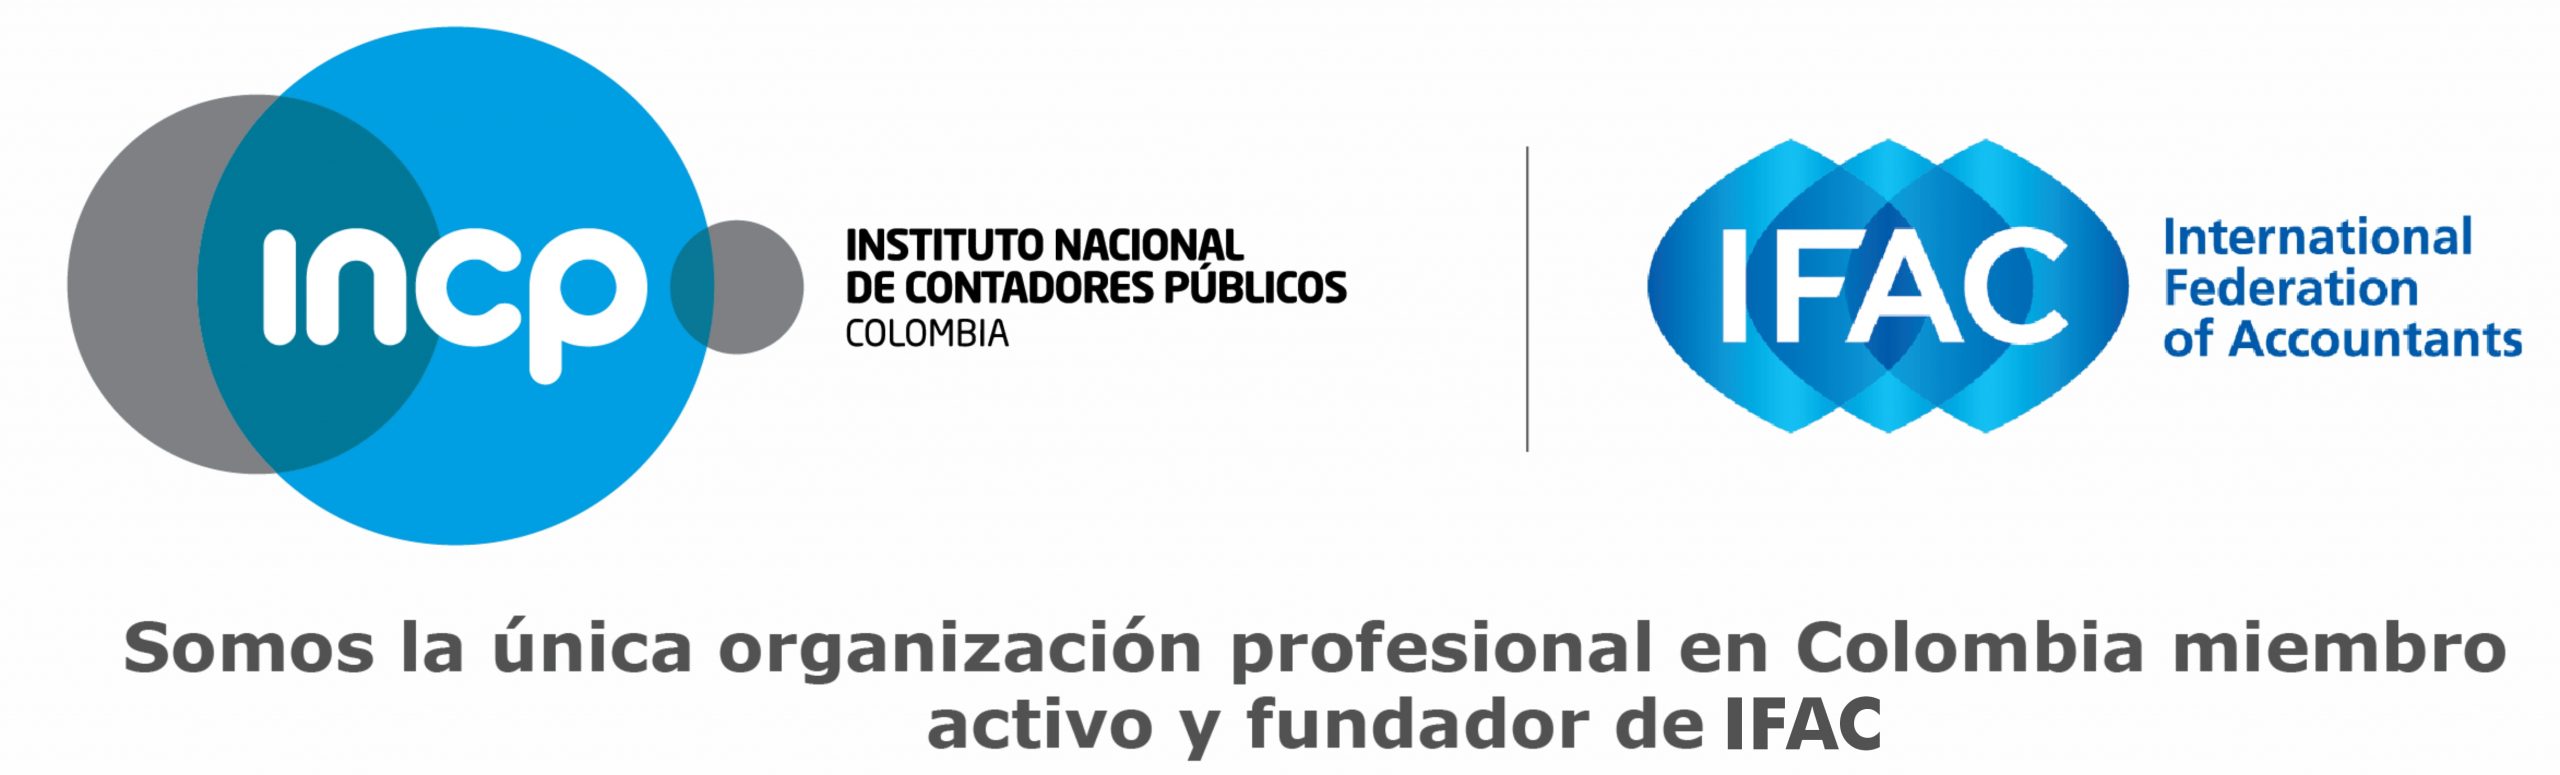 Instituto Nacional de Contadores Públicos de Colombia